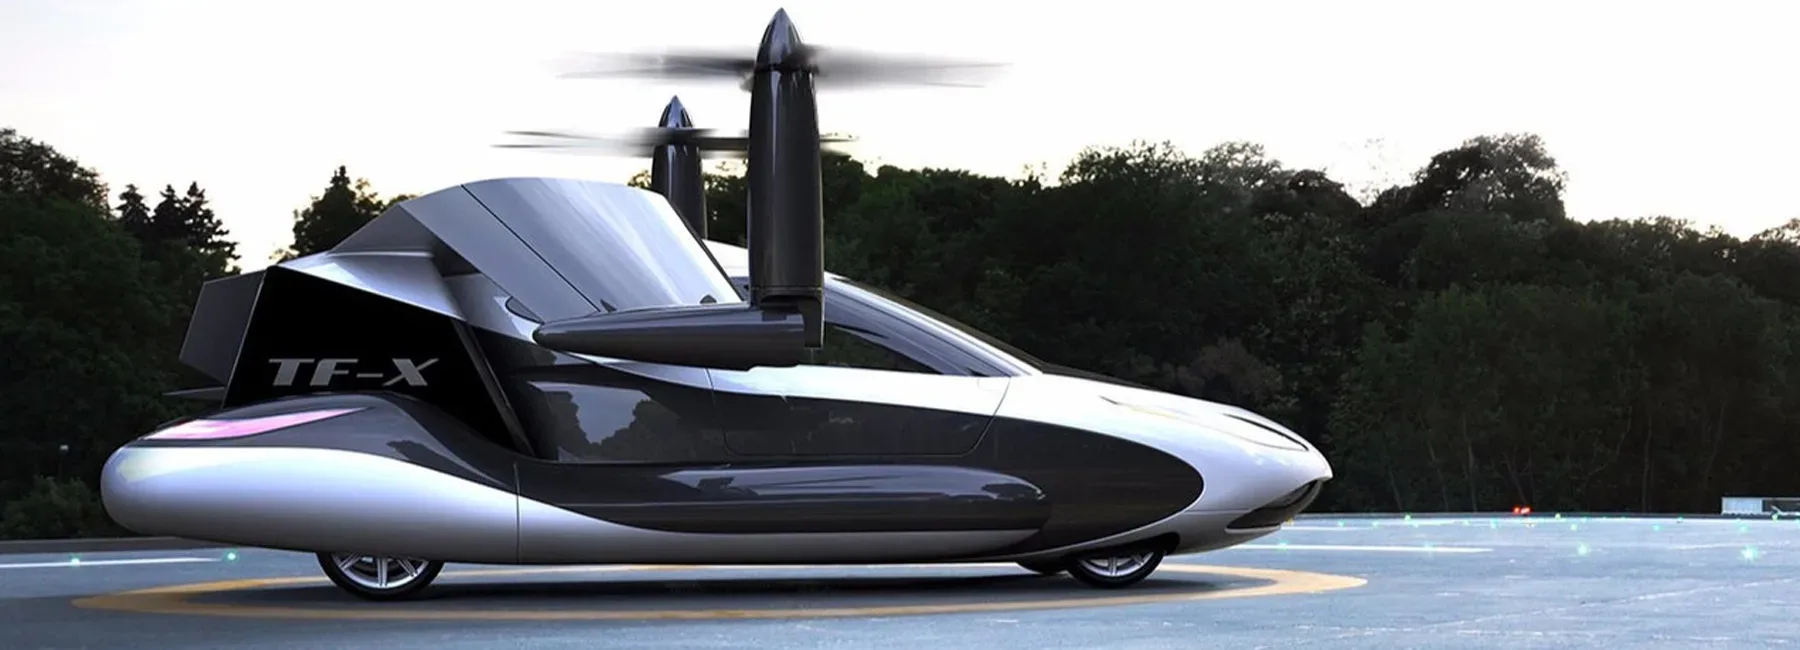 volvo parent company buys flying car firm terrafugia designboom fullheader jpg webp